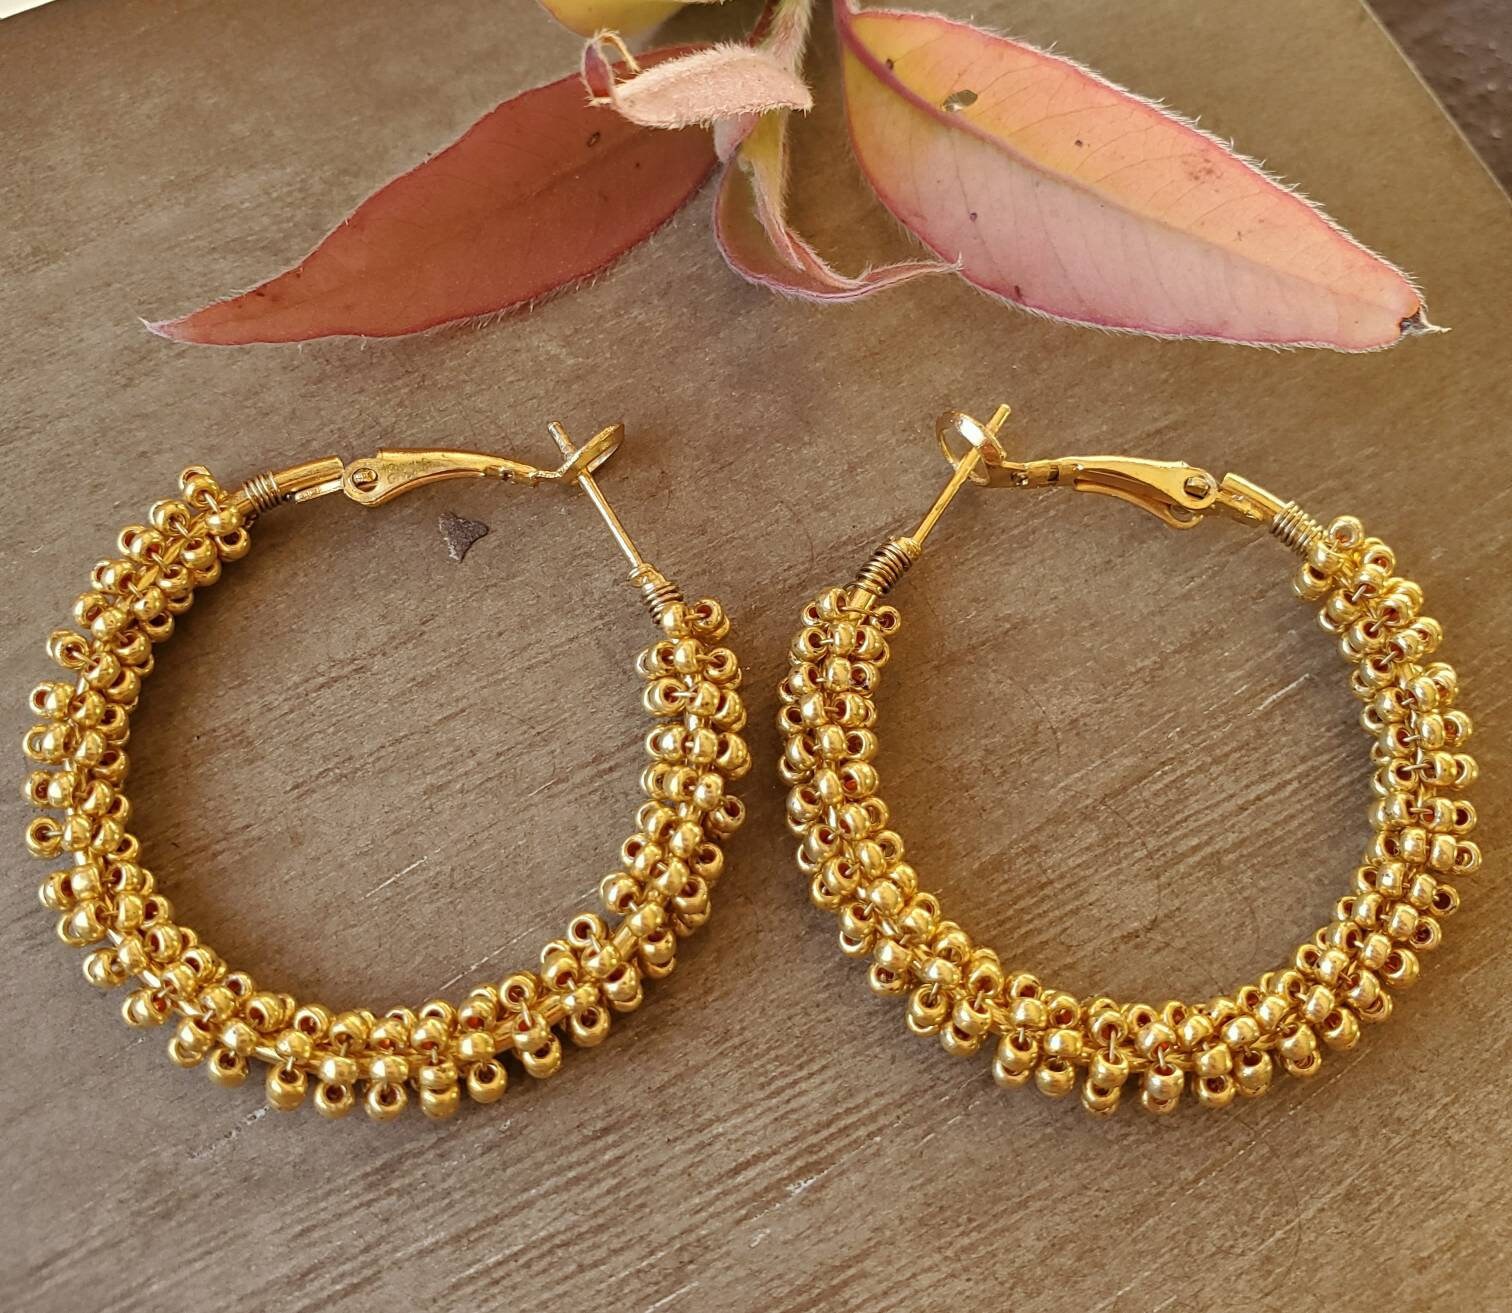 56pcs Hoop Earrings for Jewelry Making,Earring Beading Hoop Round Beading Hoop Open Beading Hoop Big Hoop Earrings for Women Girls Gift DIY Crafts(2